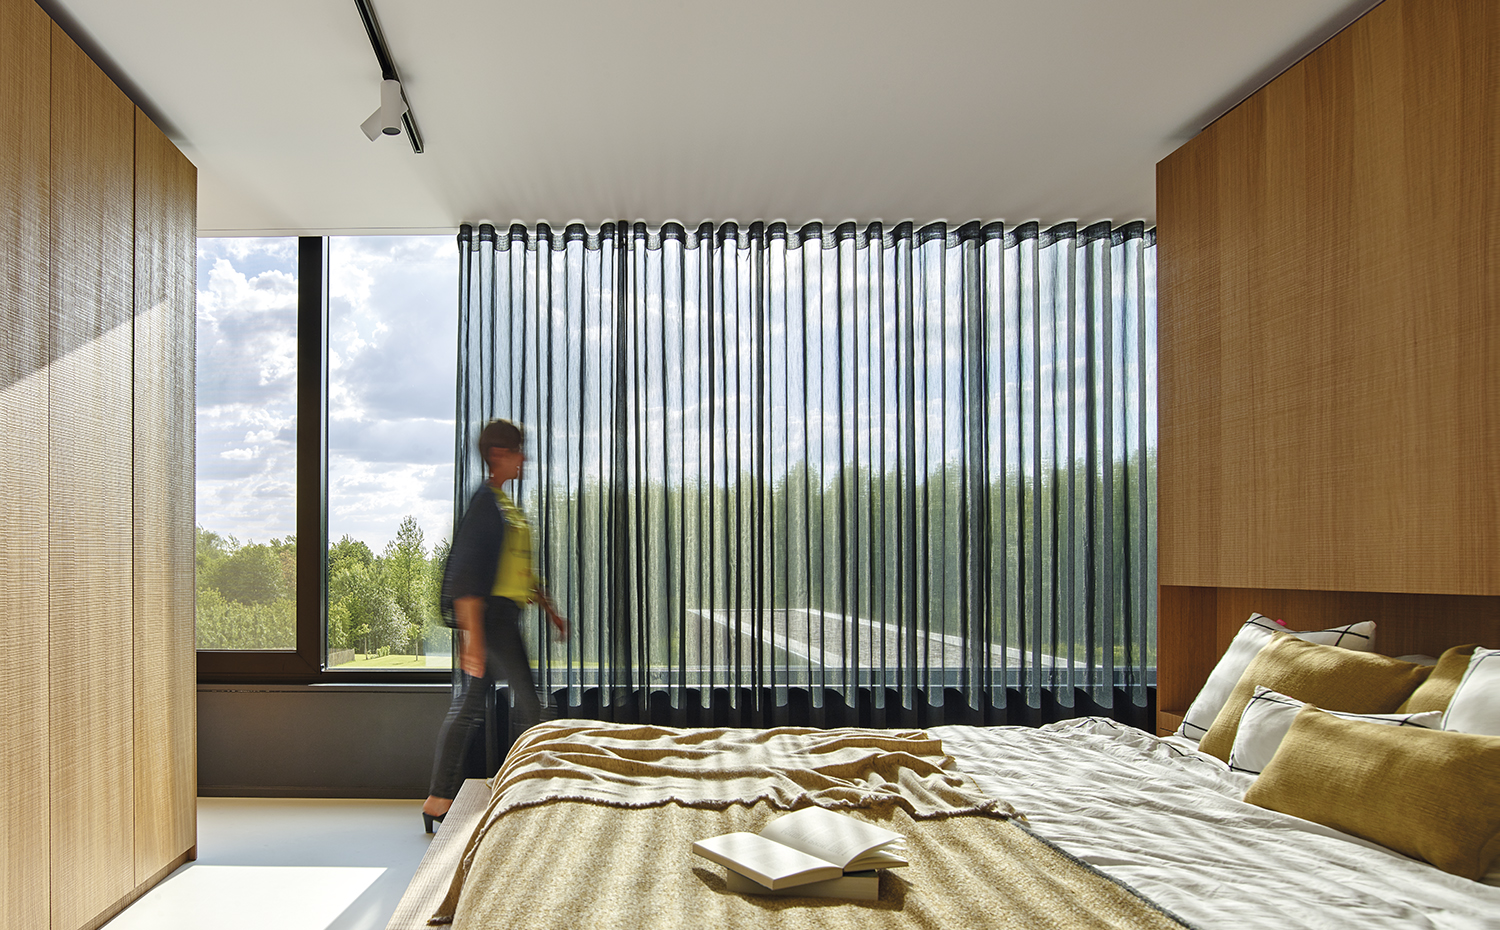 AyD-Meertens VG33827. La ligereza de la cortina permite tamizar la luz natural sin restar luminosidad al dormitorio. El cubrecama y el plaid son de la firma Teixidors